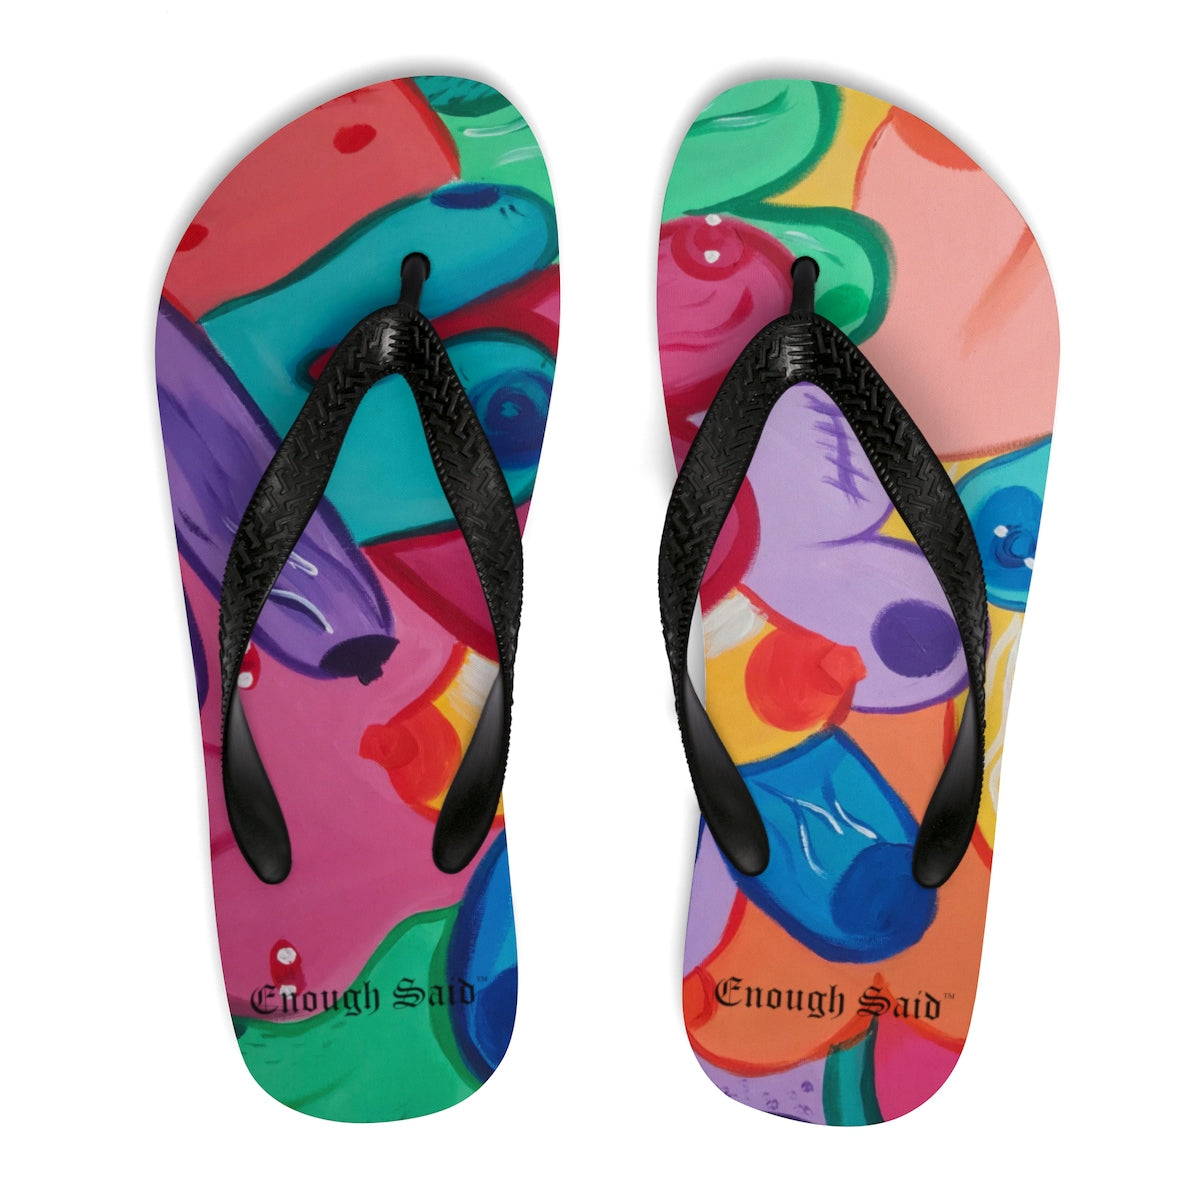 Unisex Flip Flops / Slippers